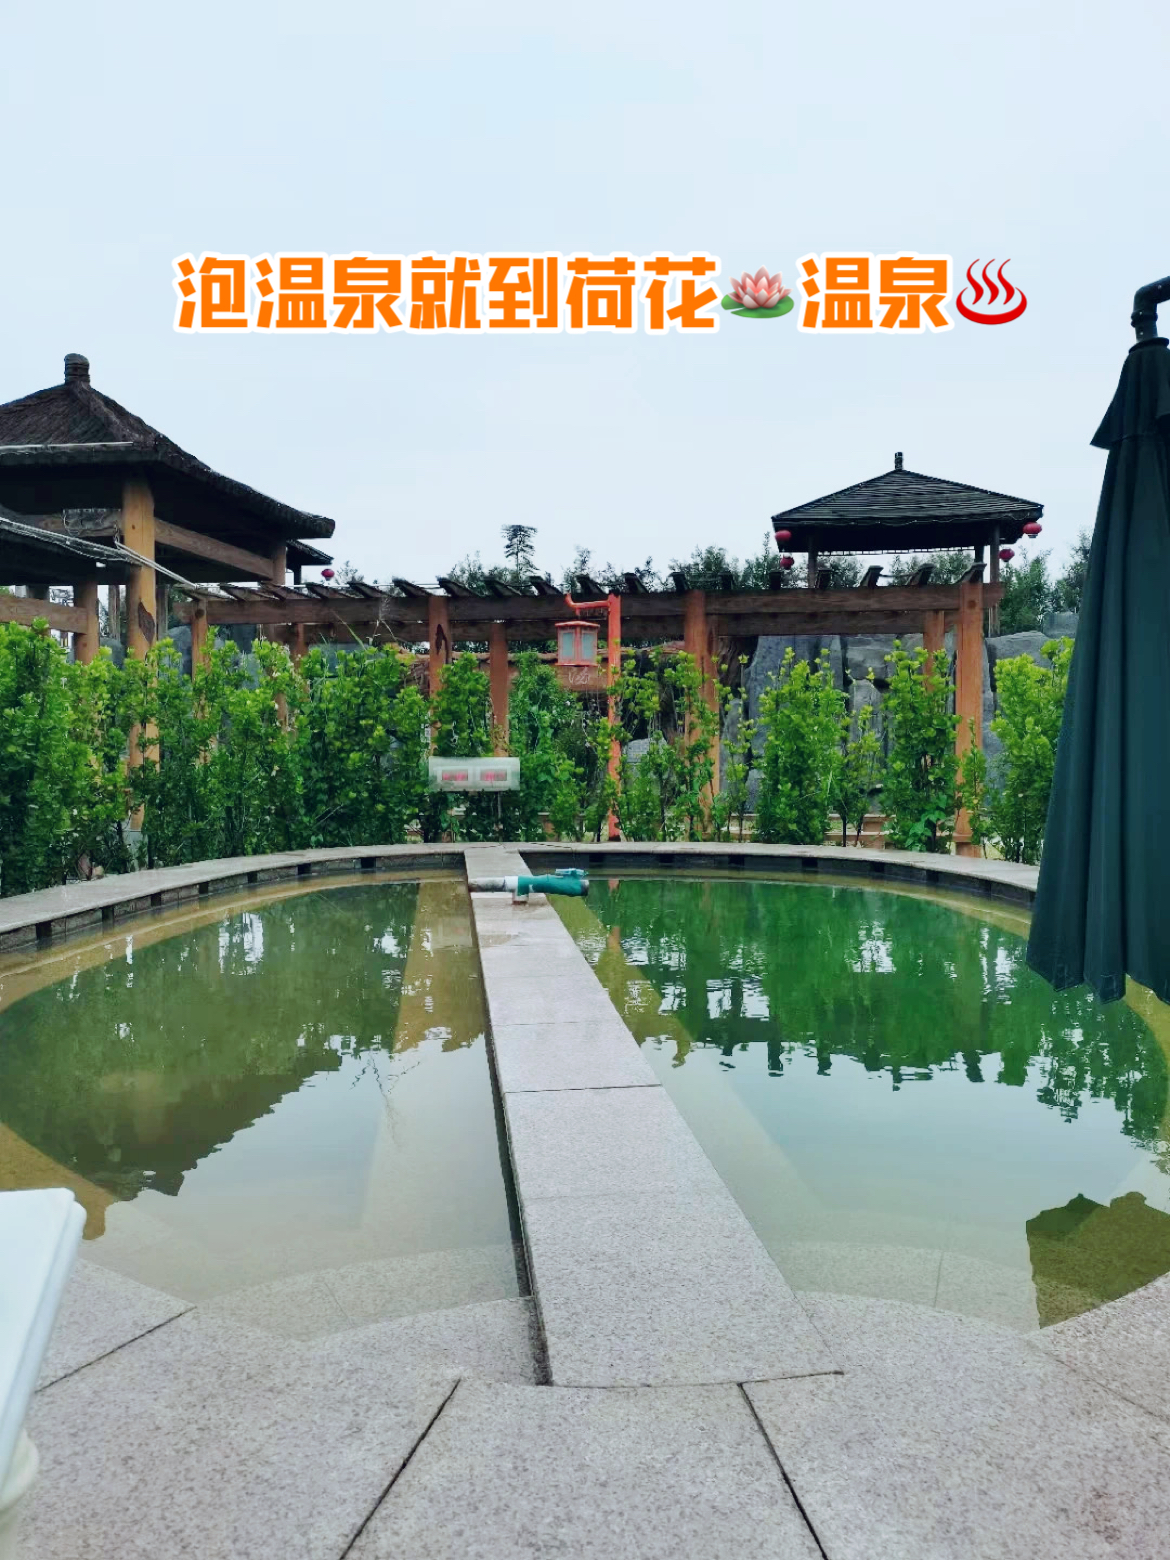 [Cute]荷花园温泉位于襄汾县邓庄镇燕村，复古的度假酒店、温泉SPA酒店、荷花温泉度假村，以及配备